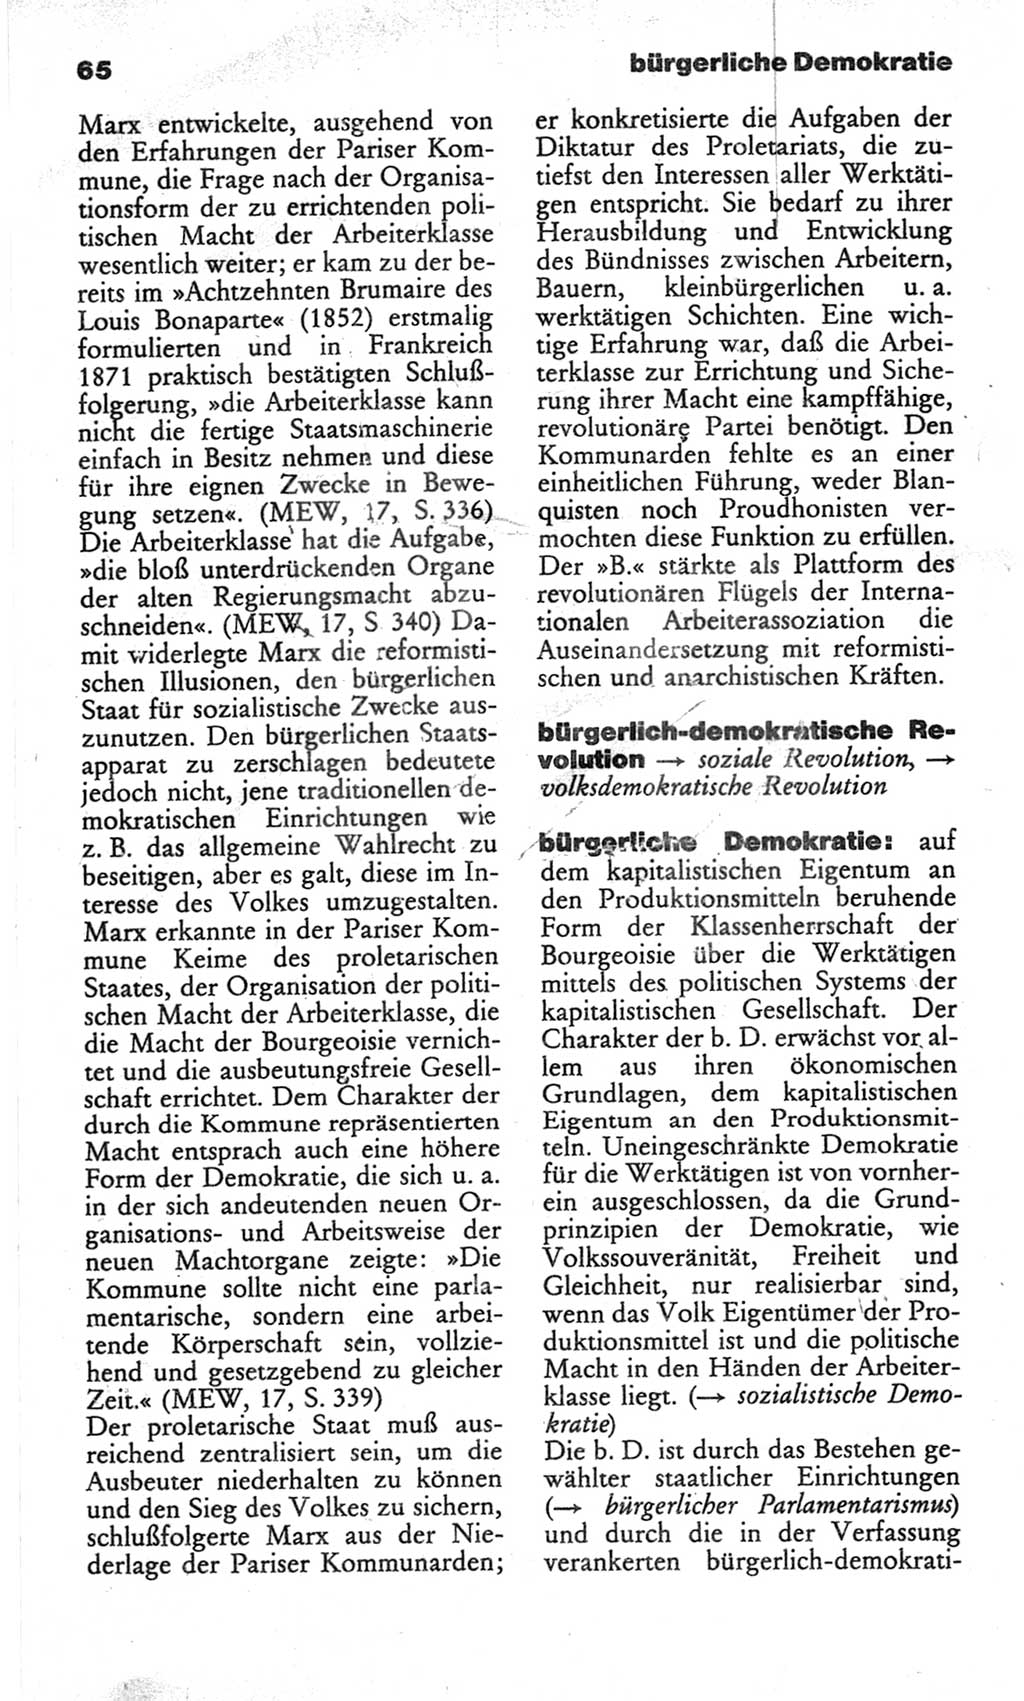 Wörterbuch des wissenschaftlichen Kommunismus [Deutsche Demokratische Republik (DDR)] 1982, Seite 65 (Wb. wiss. Komm. DDR 1982, S. 65)